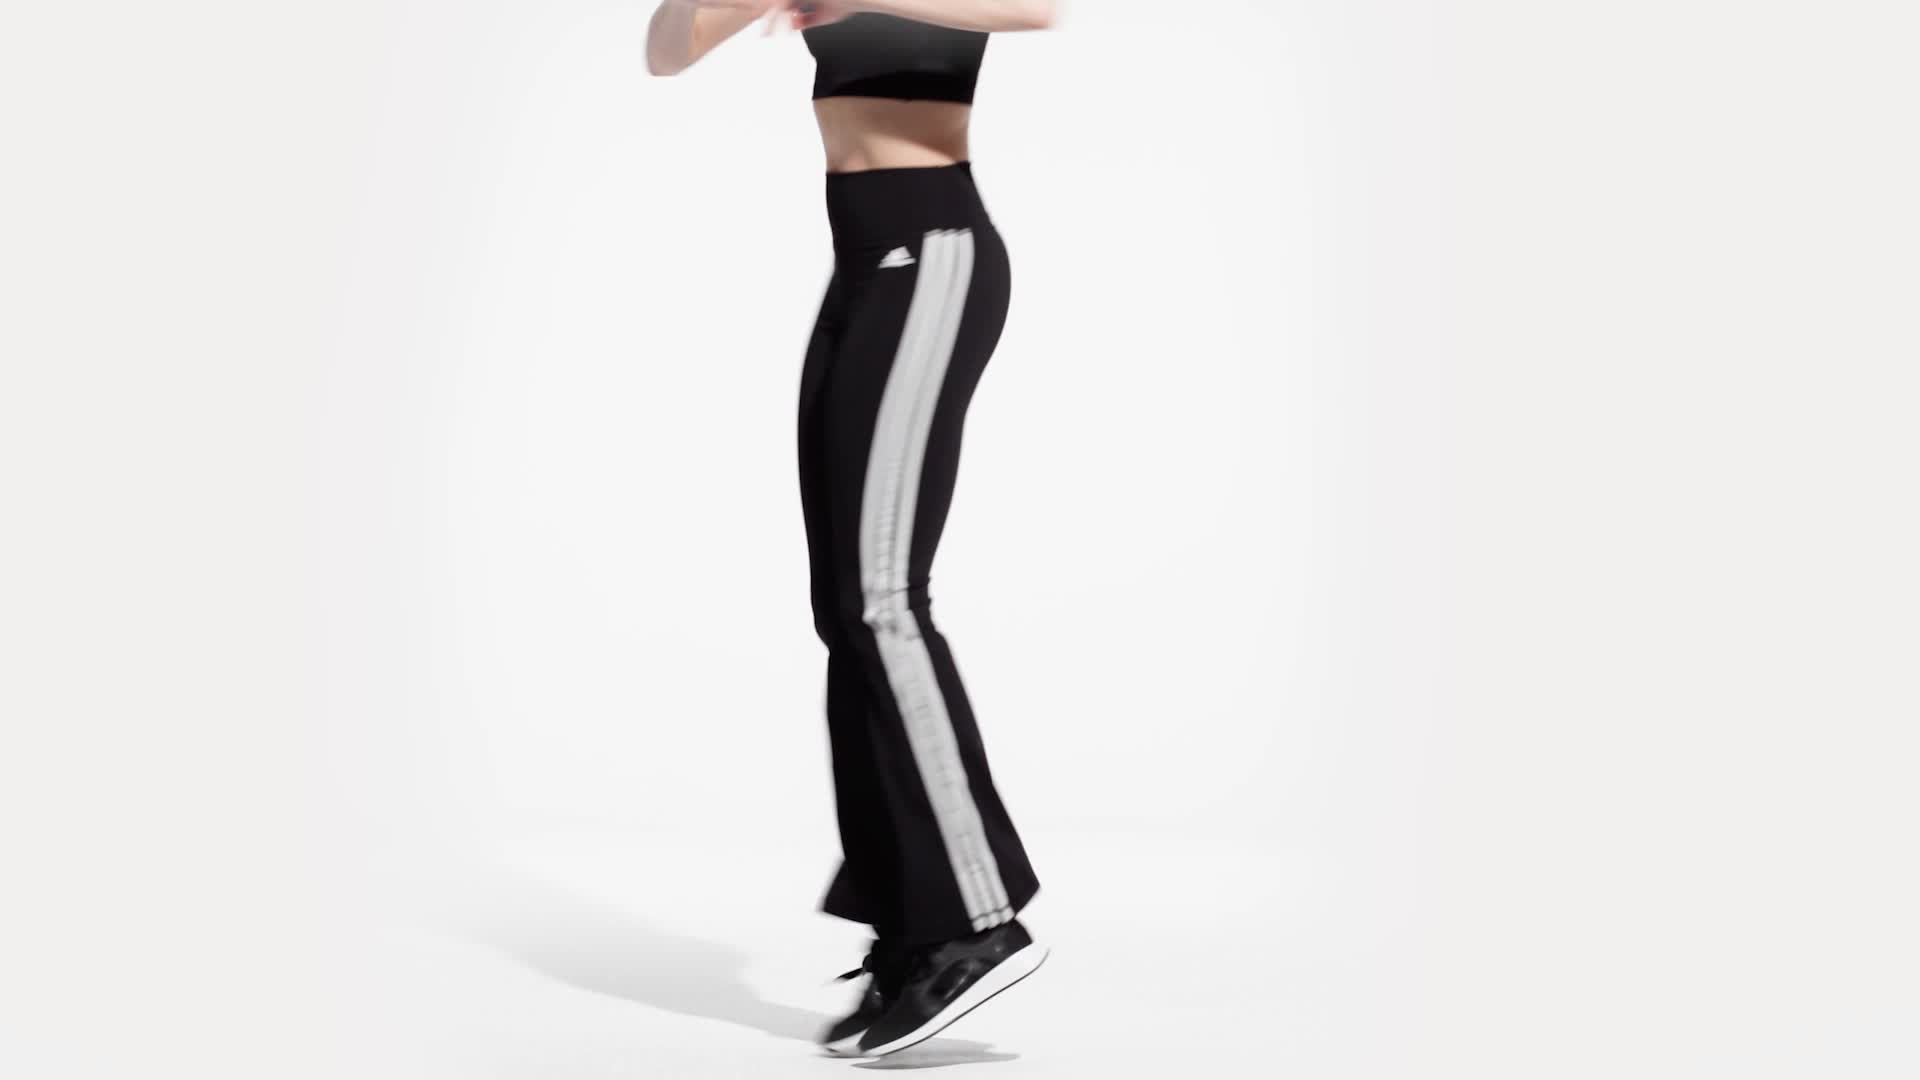 AE, Women's Fitness - Wrap Pants - Black, Workout Pants Women